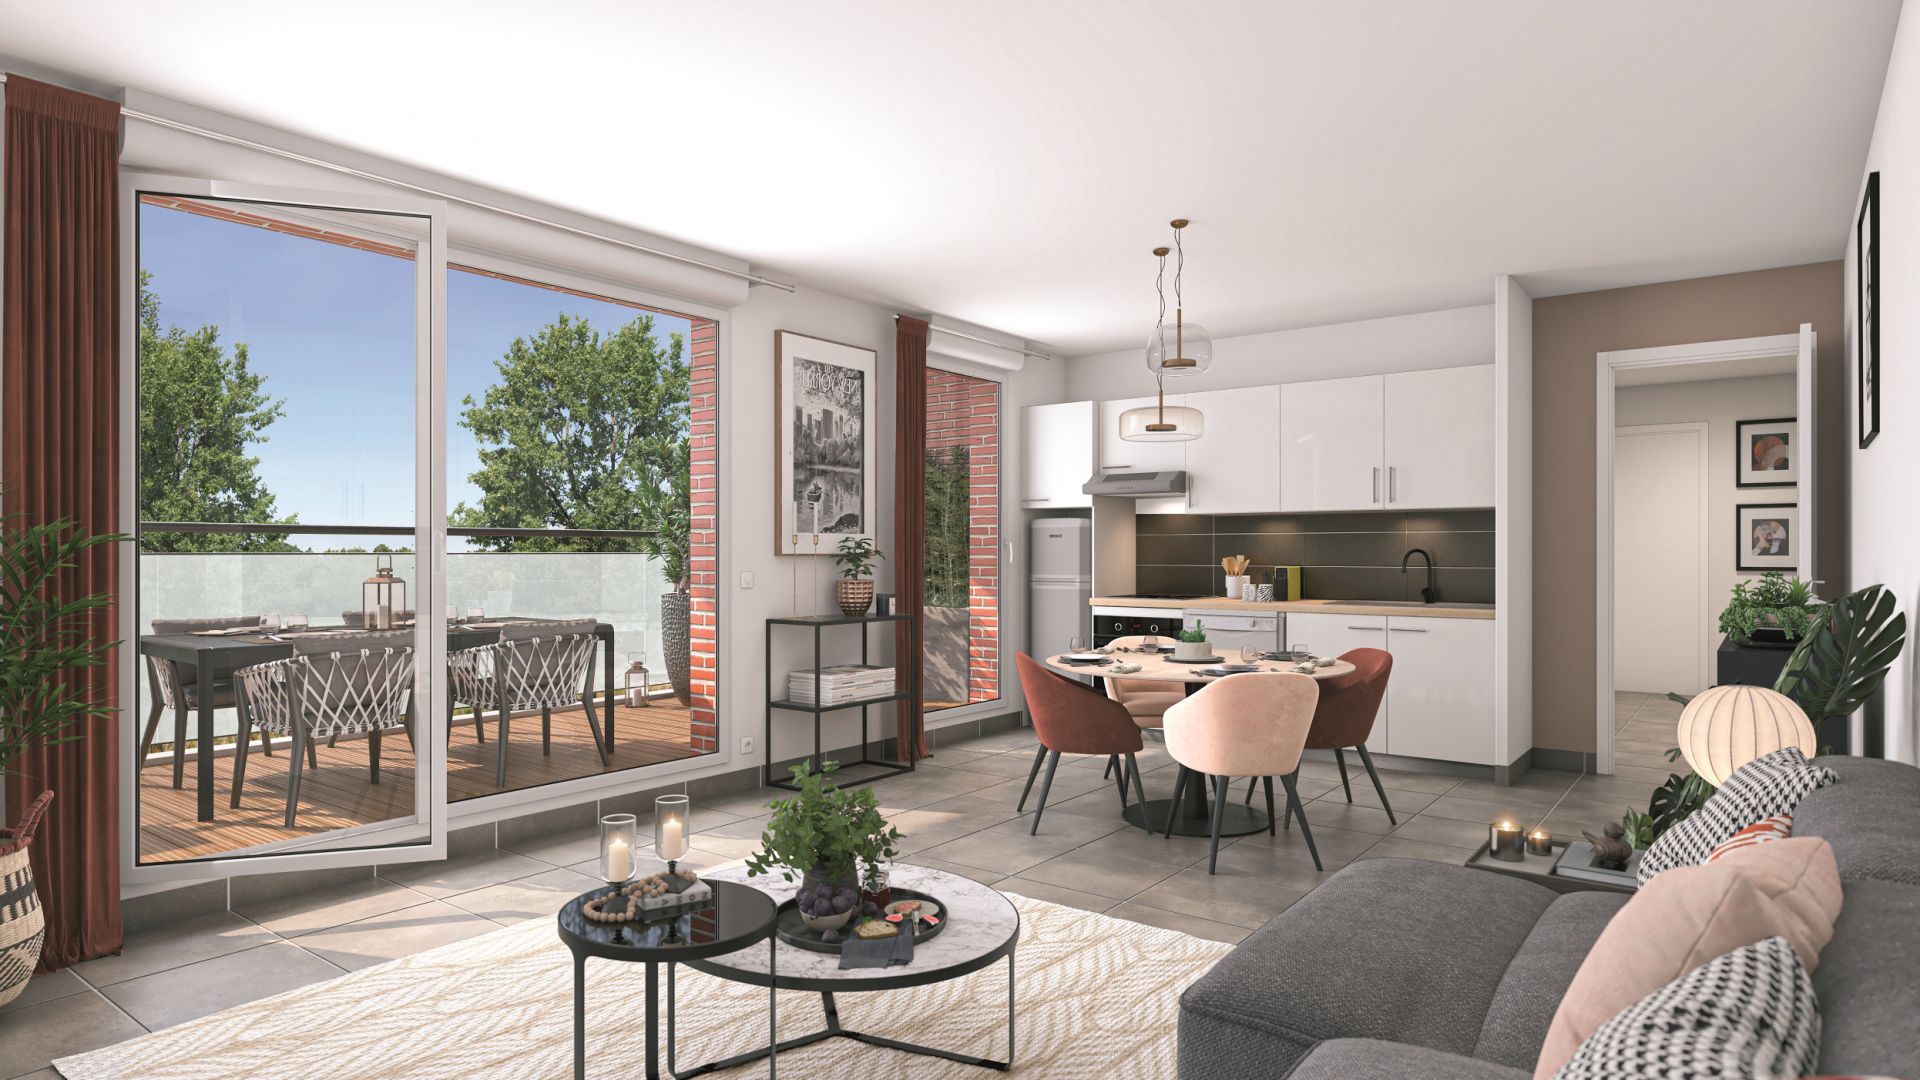 Greencity immobilier - achat appartements neufs du T2 au T3 - Résidence Le Montéverdi 1 - 31600 Eaunes - vue intérieure